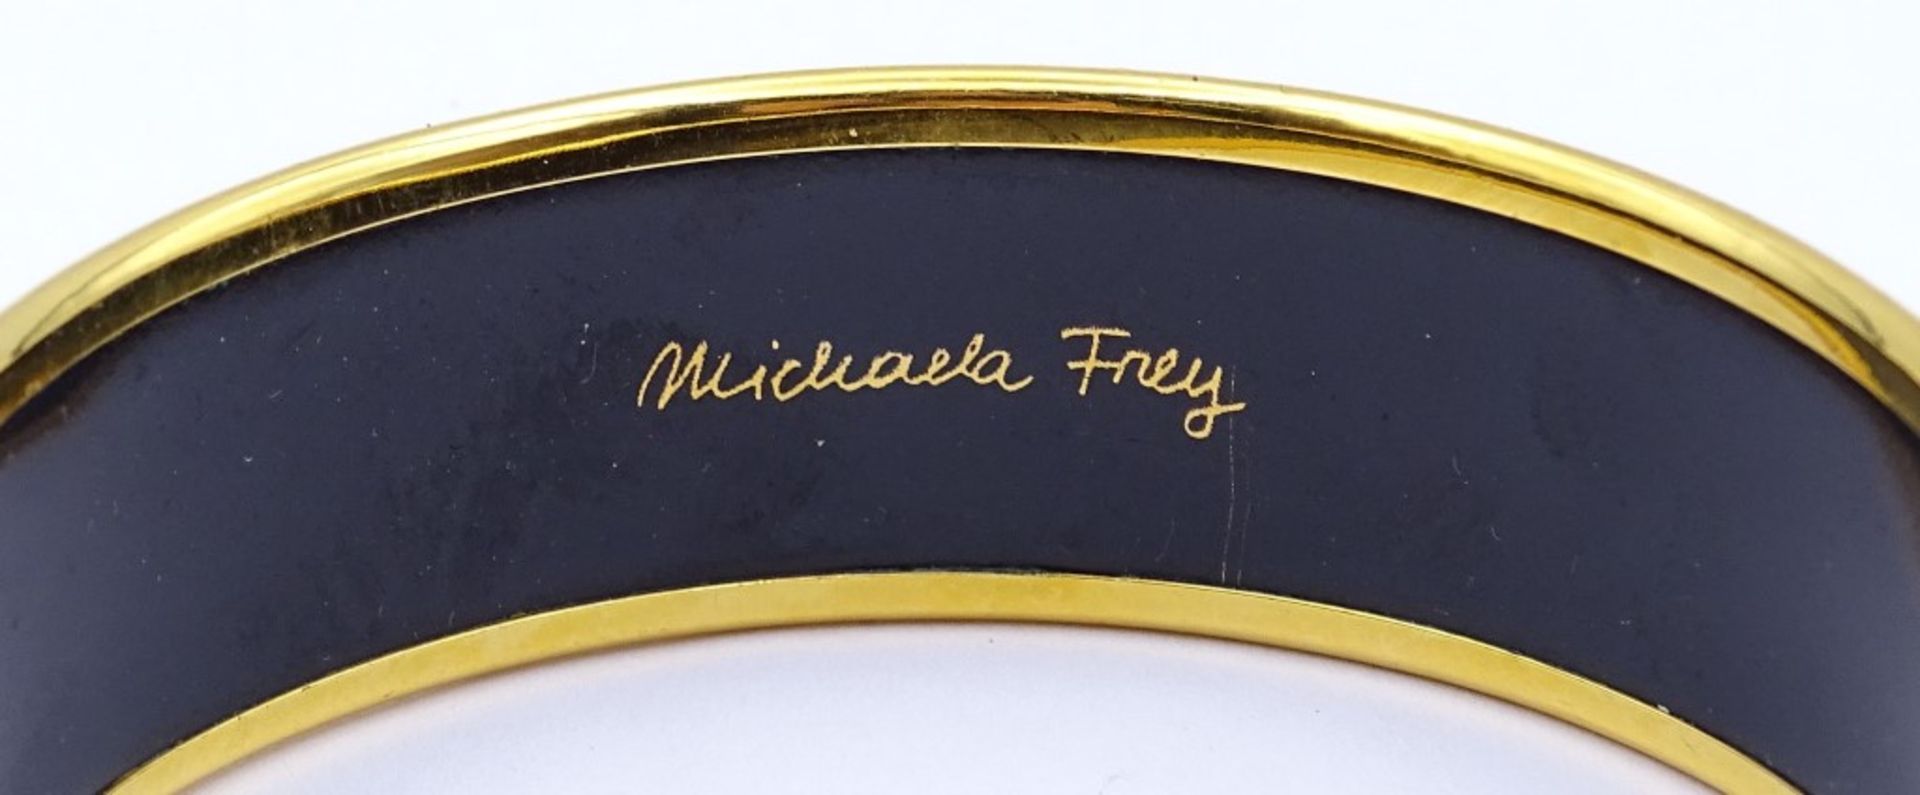 Armreif von "Michaela Frey",emailliert mit eingebrannten Feingolddekor,d-6,5cm - Bild 2 aus 4